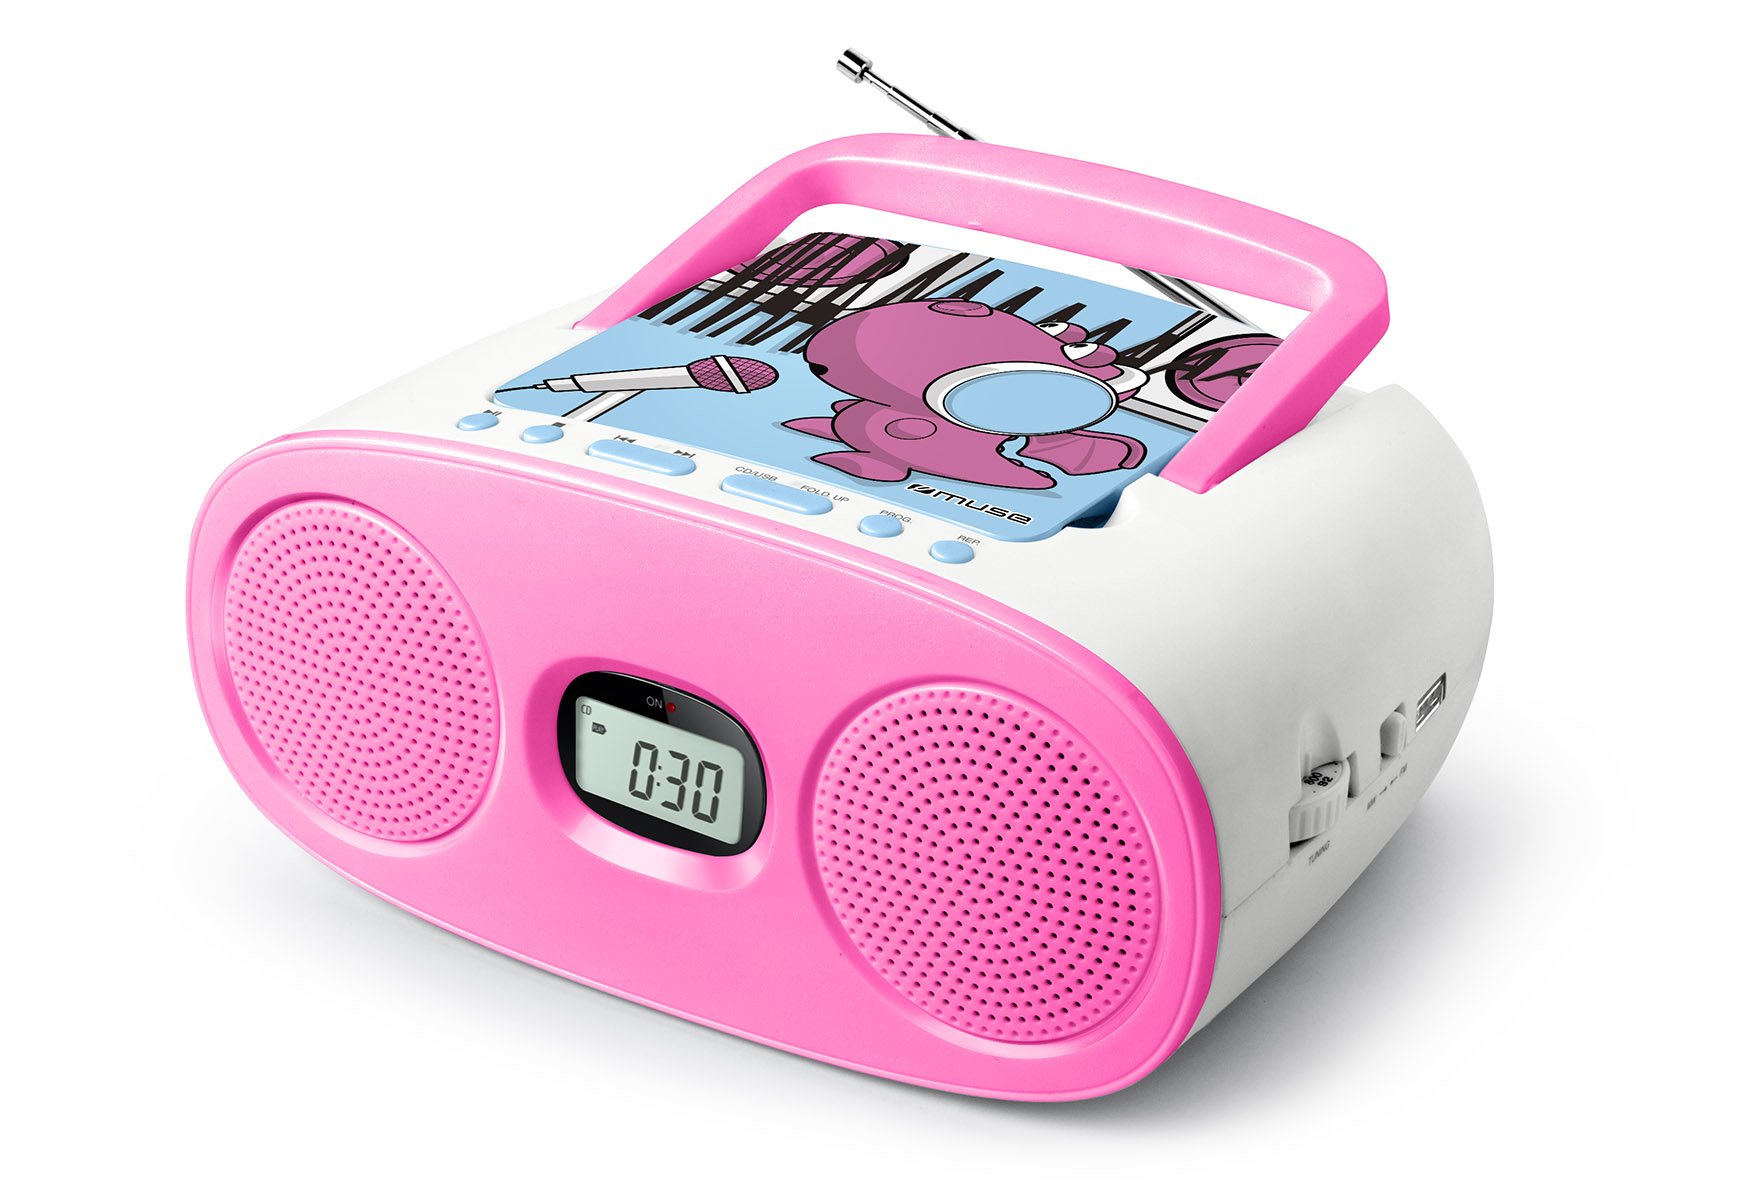 Muse M-23 KDG CD-Radio für Kinder (CD / MP3, USB, AUX-In, LCD-Display, Teleskopantenne, Netz- oder Batteriebetrieb), Rosa / Weiß mit Comic-Motiv